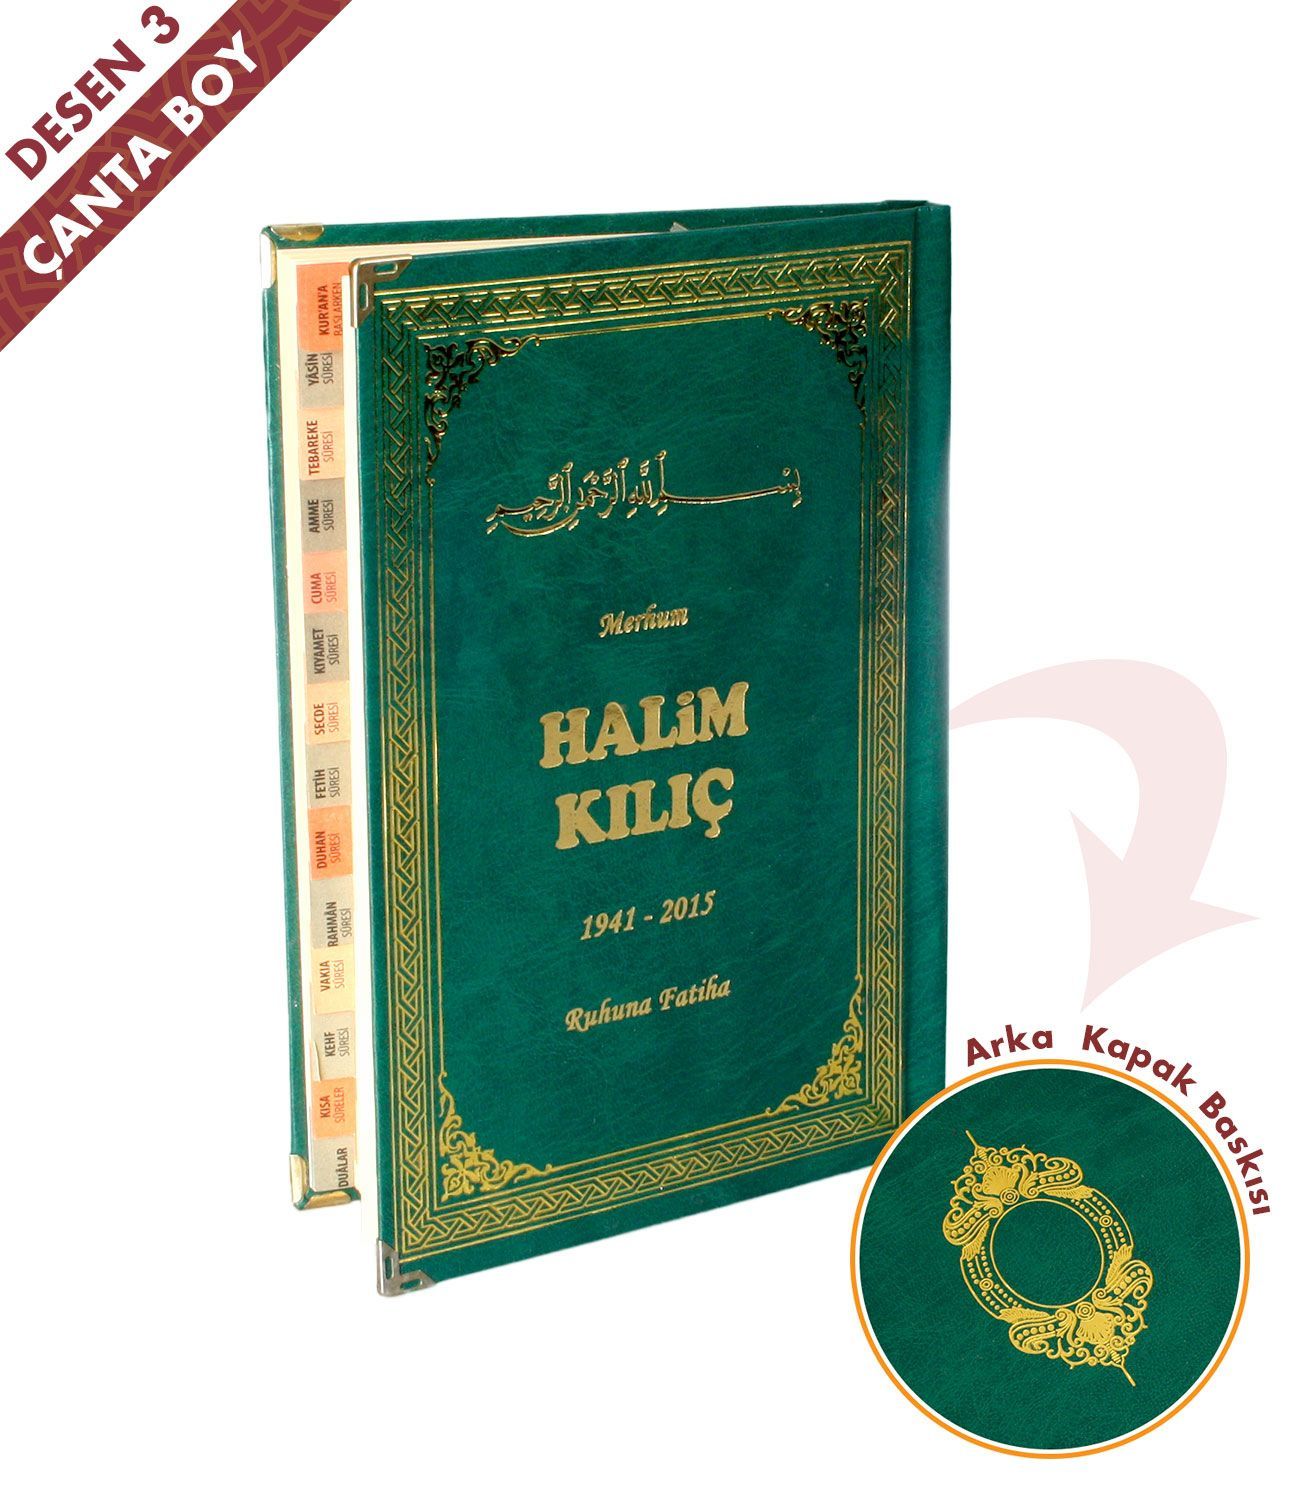 İsim Baskılı   Ciltli Yasin Kitabı   Osmanlı Desen   Yeşil   Çanta Boy